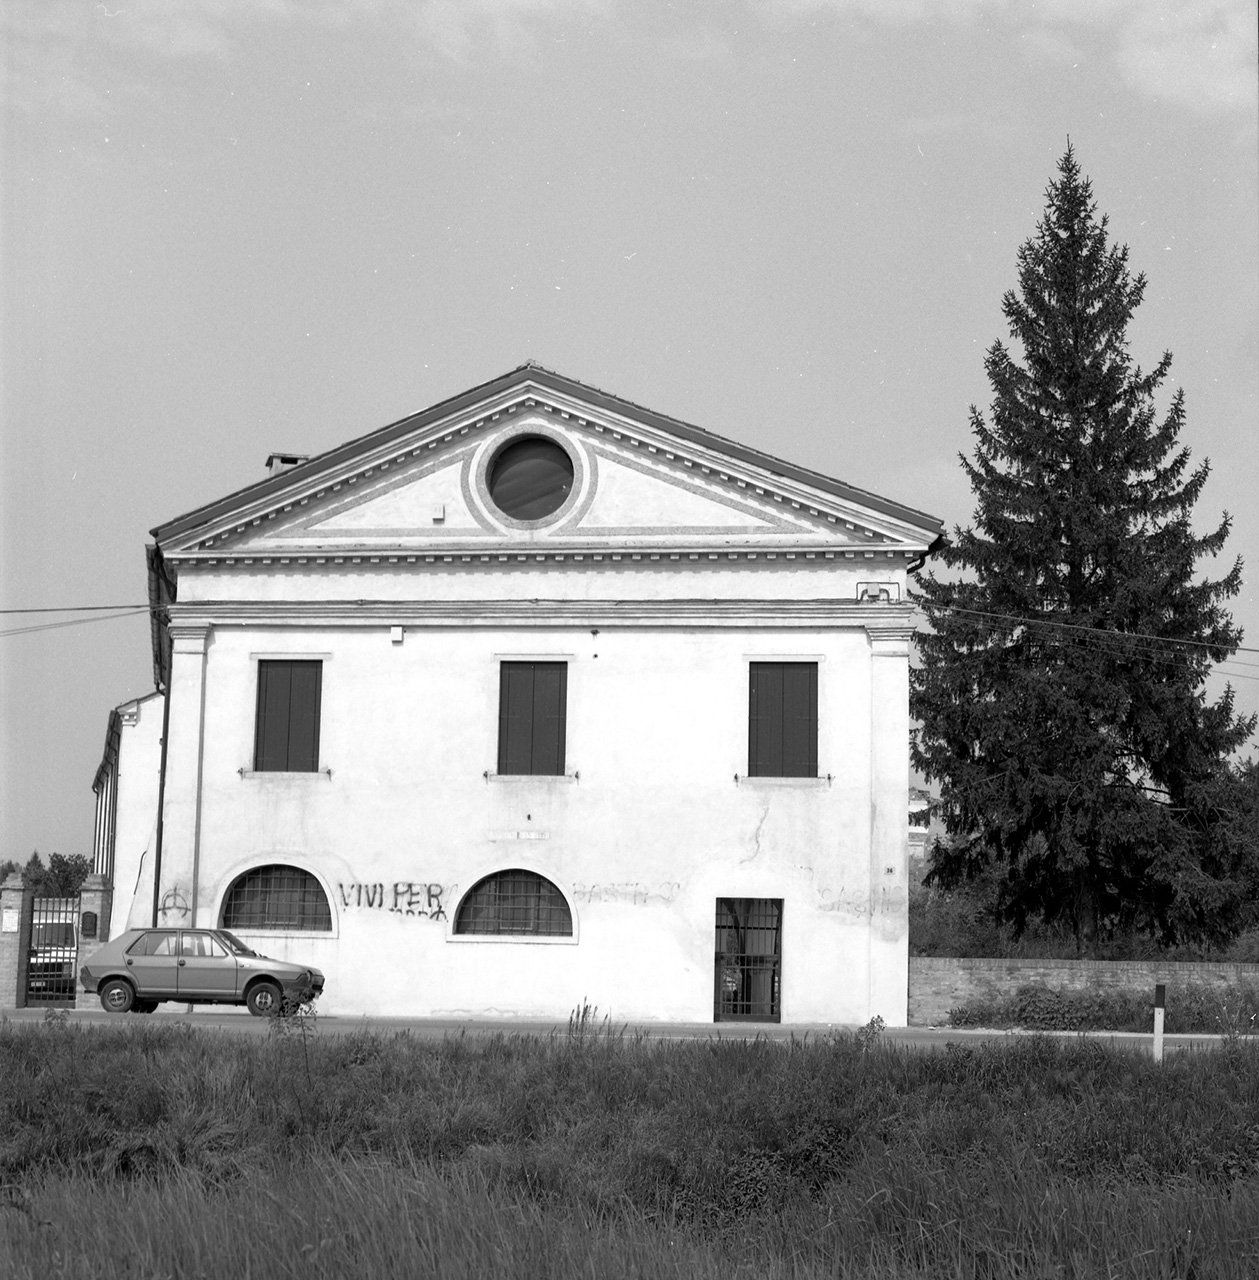 Edificio parte del Convento dei Santi Vito e Modesto (ex) (convento) - Piove di Sacco (PD) 